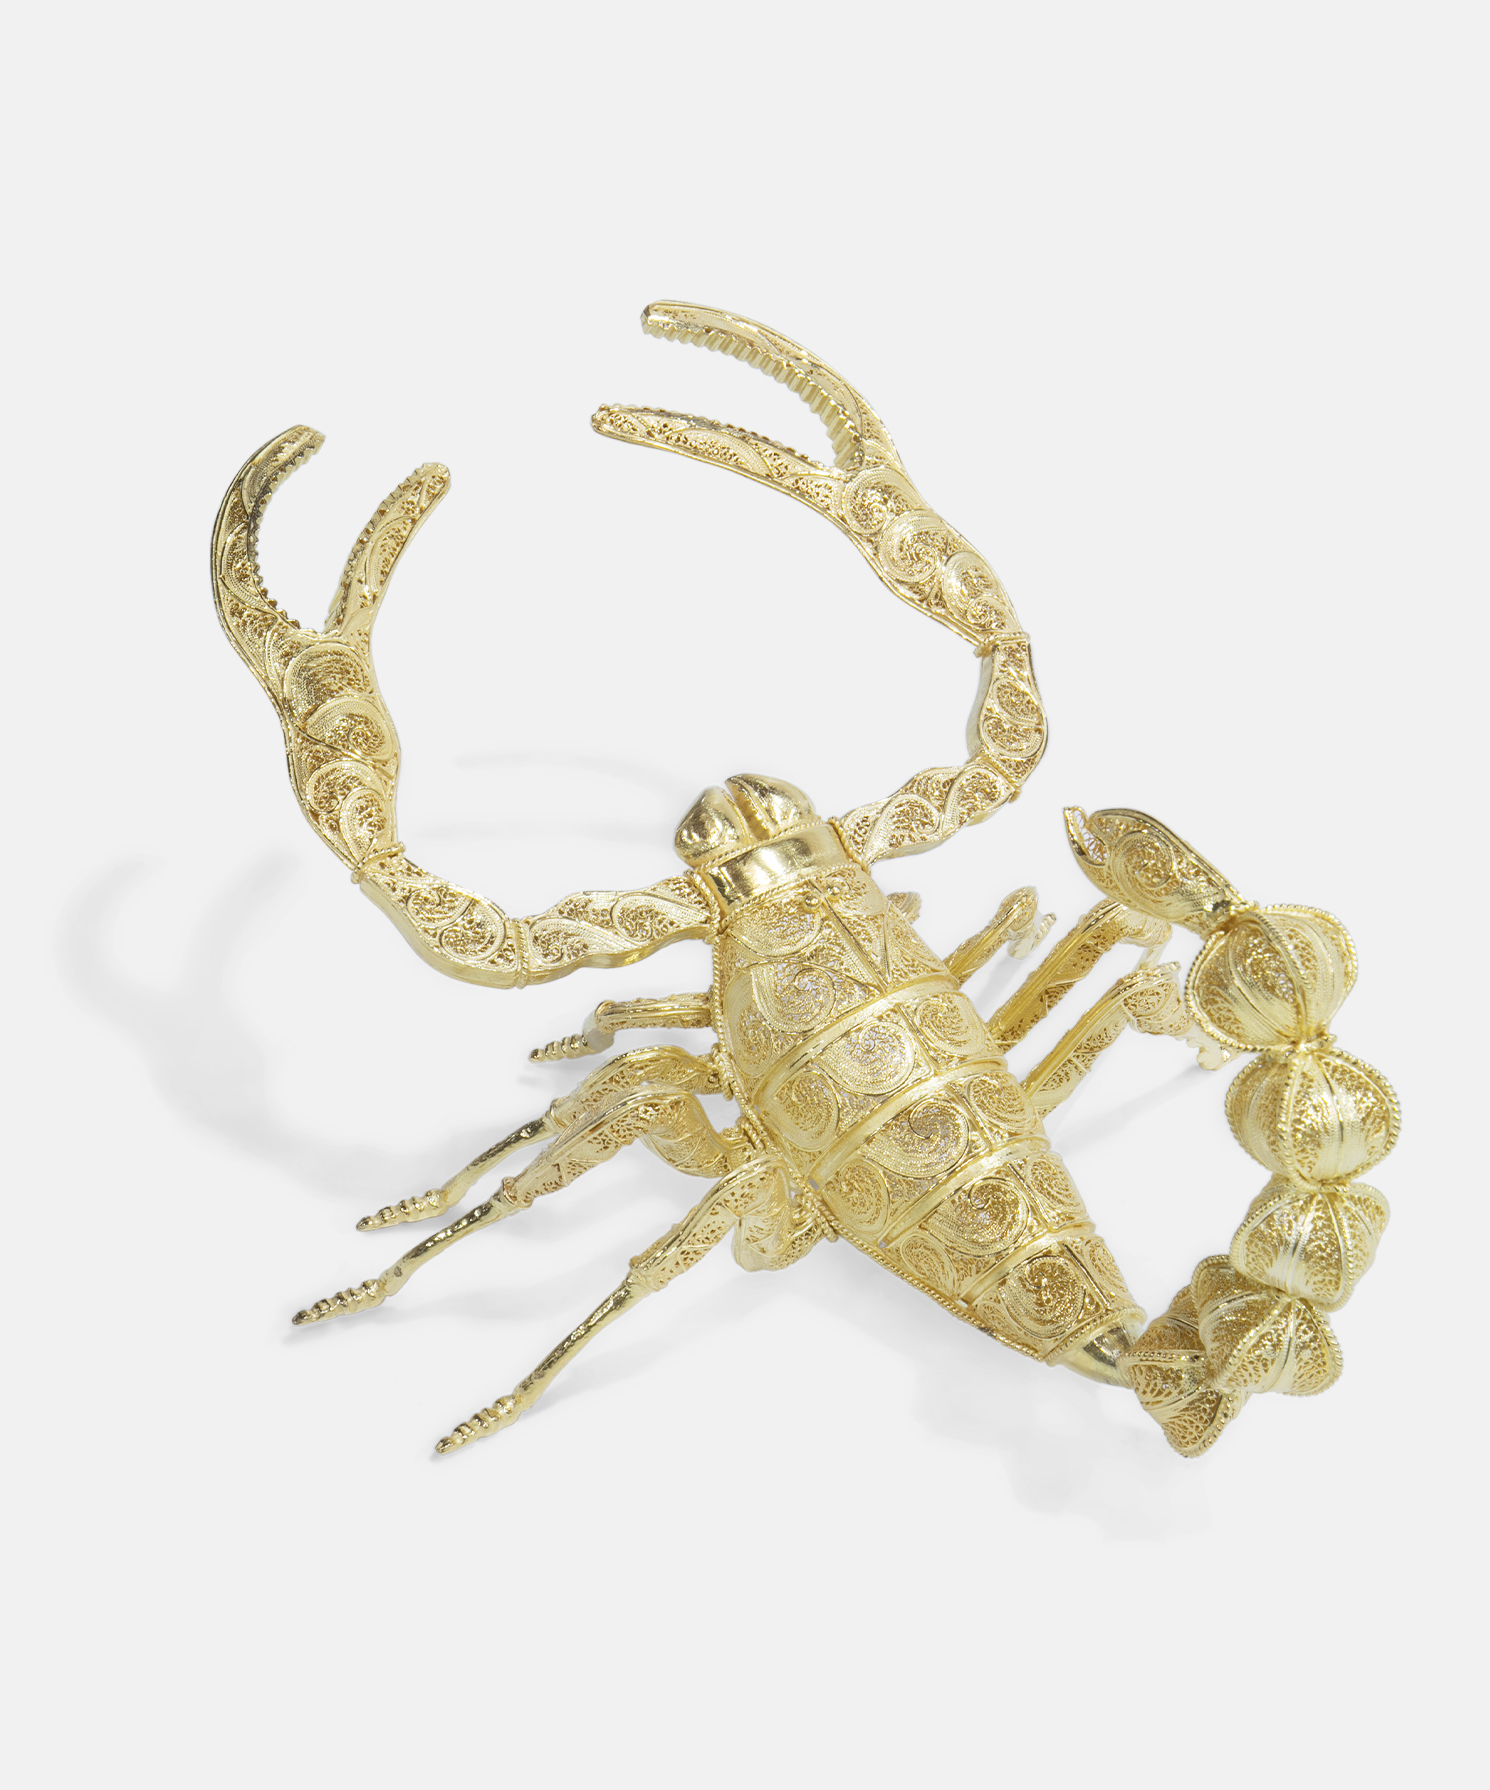 Filigree Scorpion Gold Decor | Boca do Lobo Exclusive Design